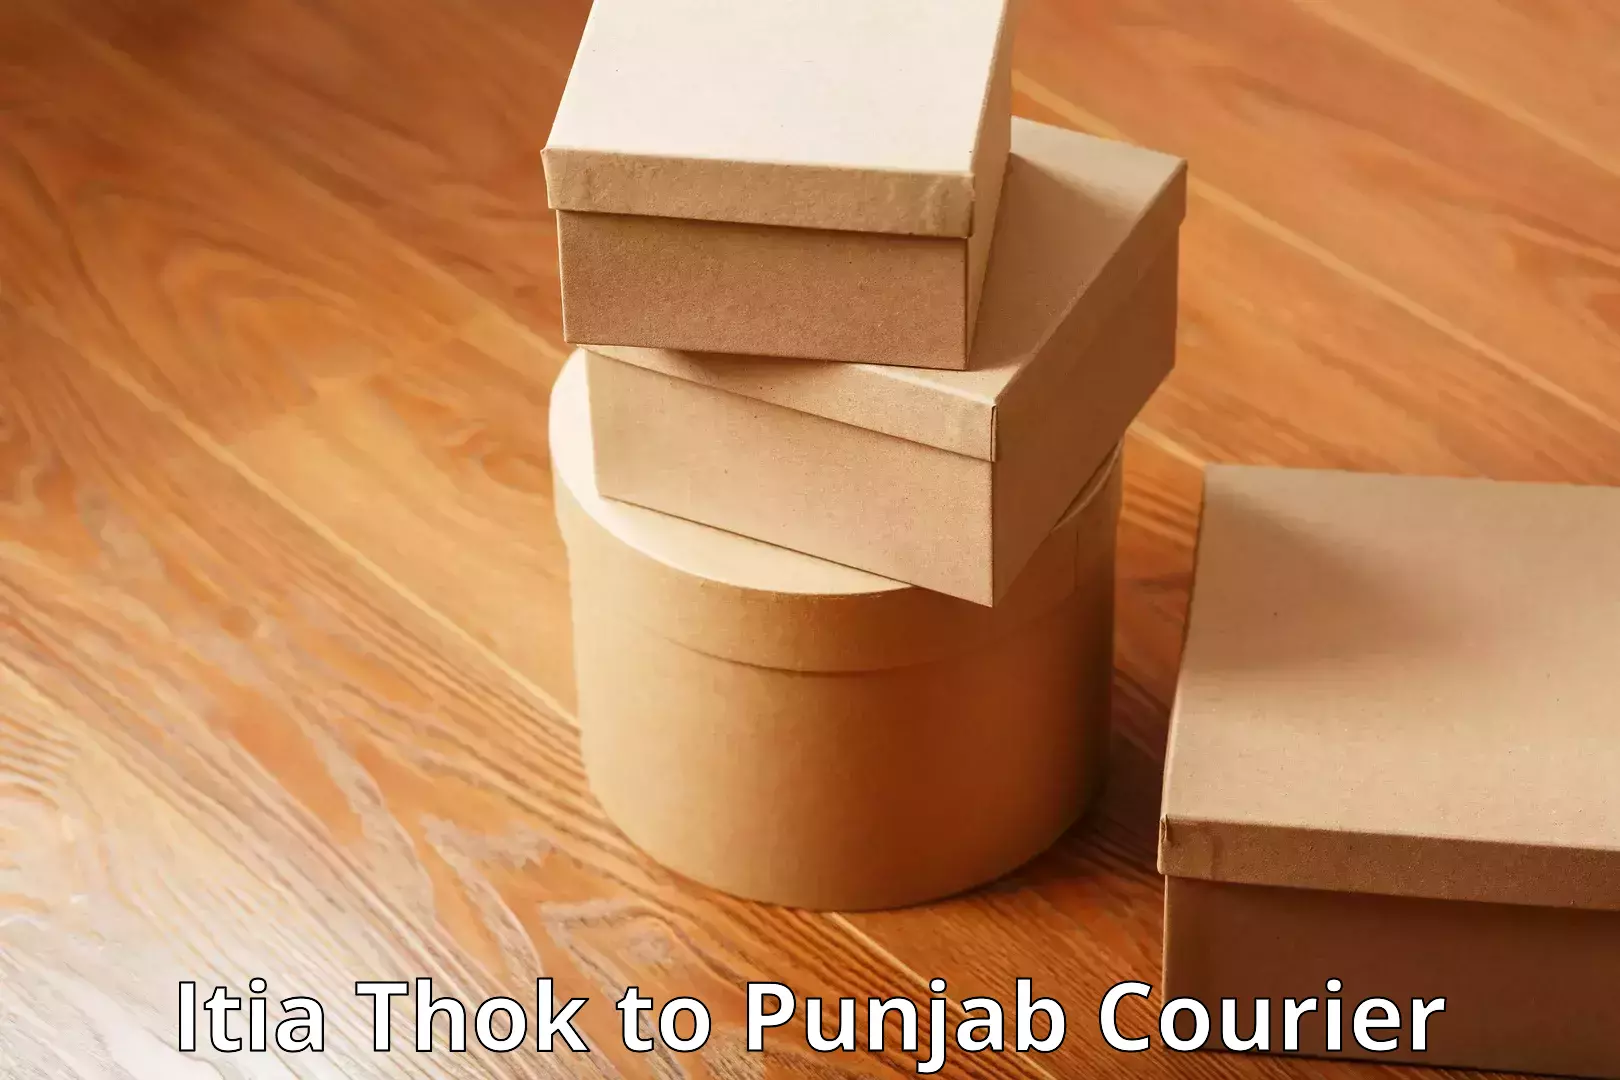 Luggage shipping options Itia Thok to Punjab